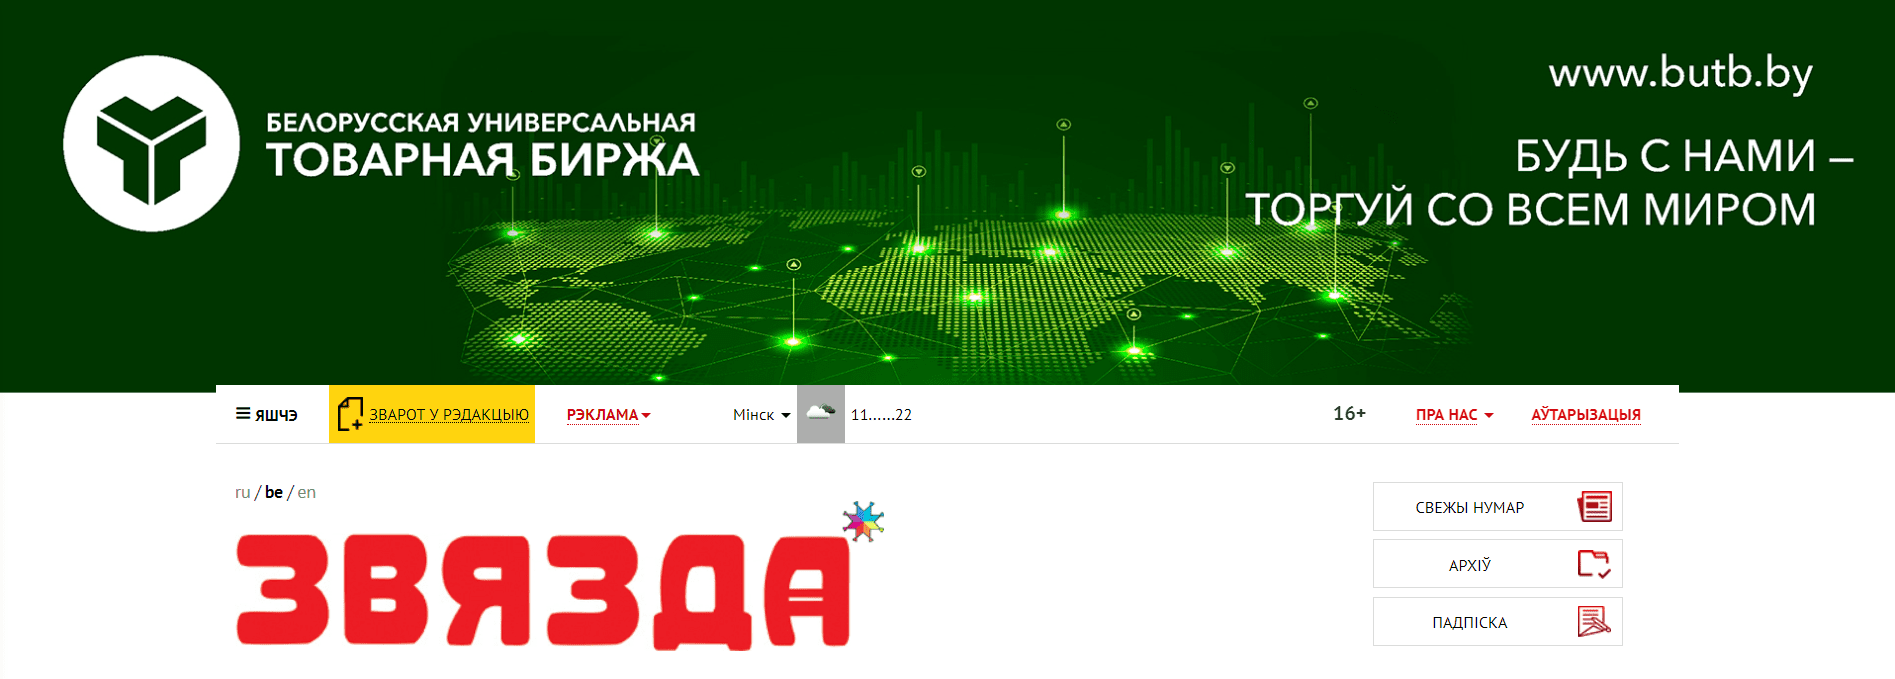 Звязда (zviazda.by) - официальный сайт